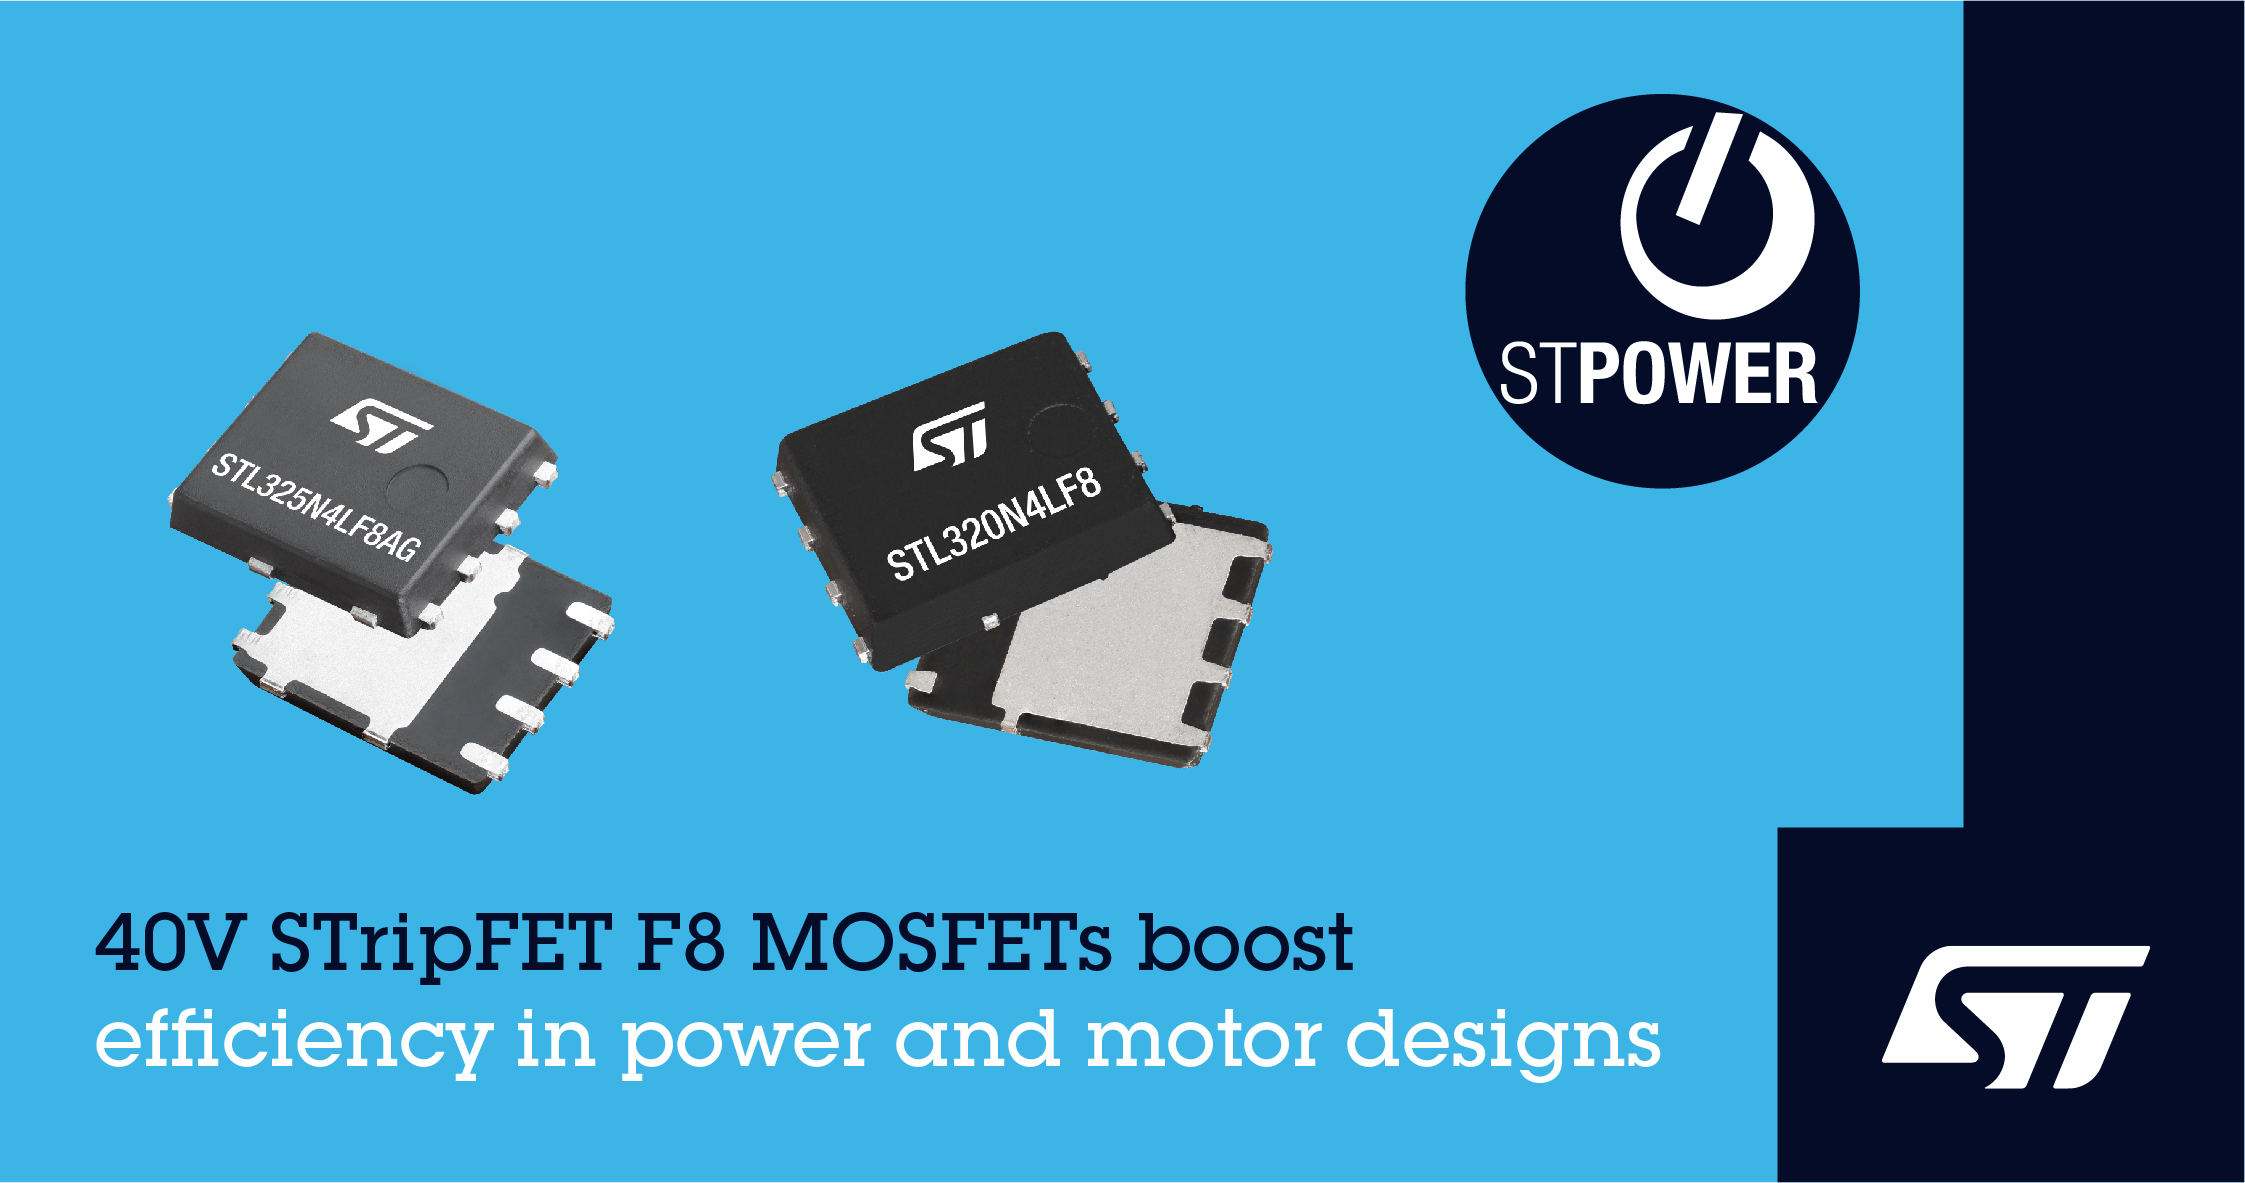 意法半导体推出40V STripFET F8 MOSFET晶体管，具备更好的节能降噪特性